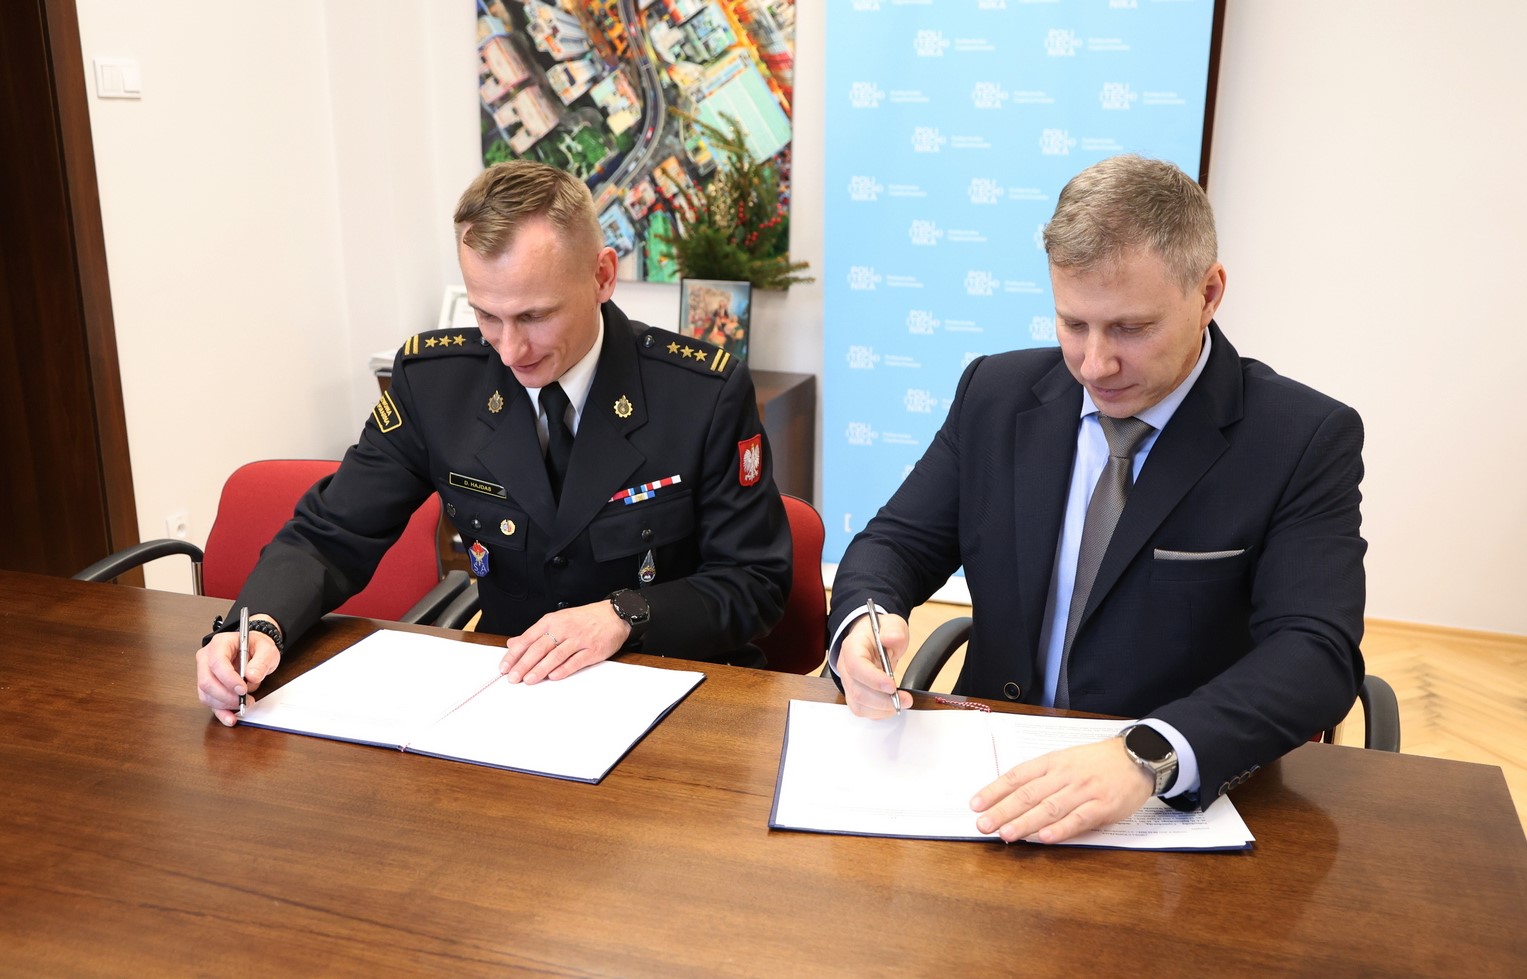 Podpisanie umowy o współpracy Centralnej Szkoły PSP w Częstochowie z Politechniką Częstochowską